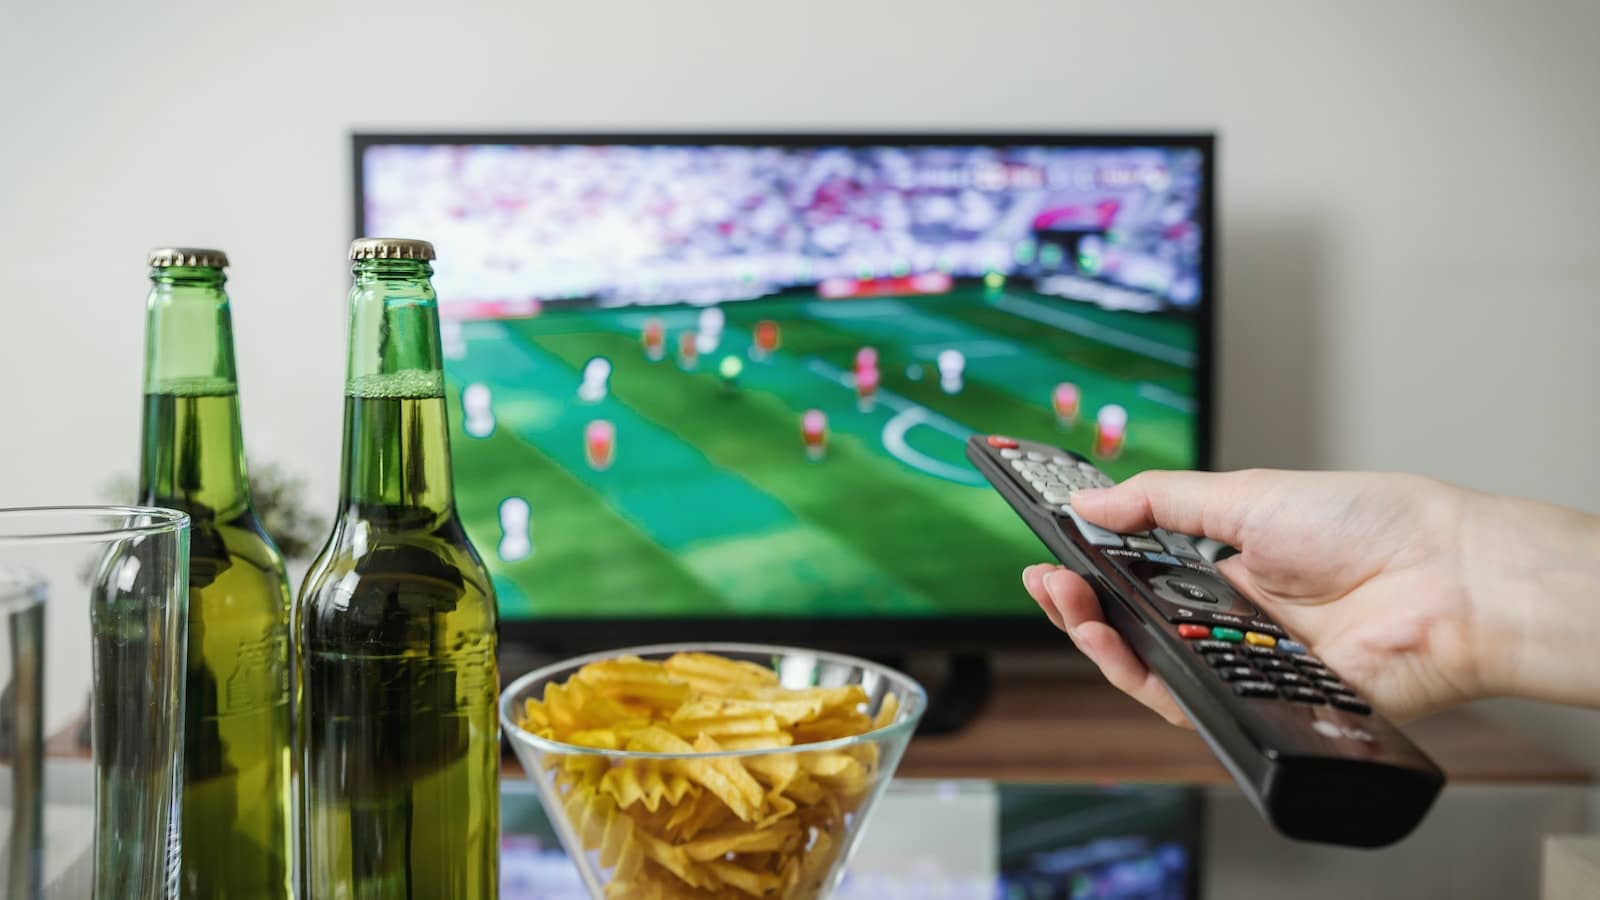 dłoń trzymająca pilot od tv, obok stoi miska z chipsami i dwa piwa, w tle duży telewizor transmitujący mecz piłki nożnej